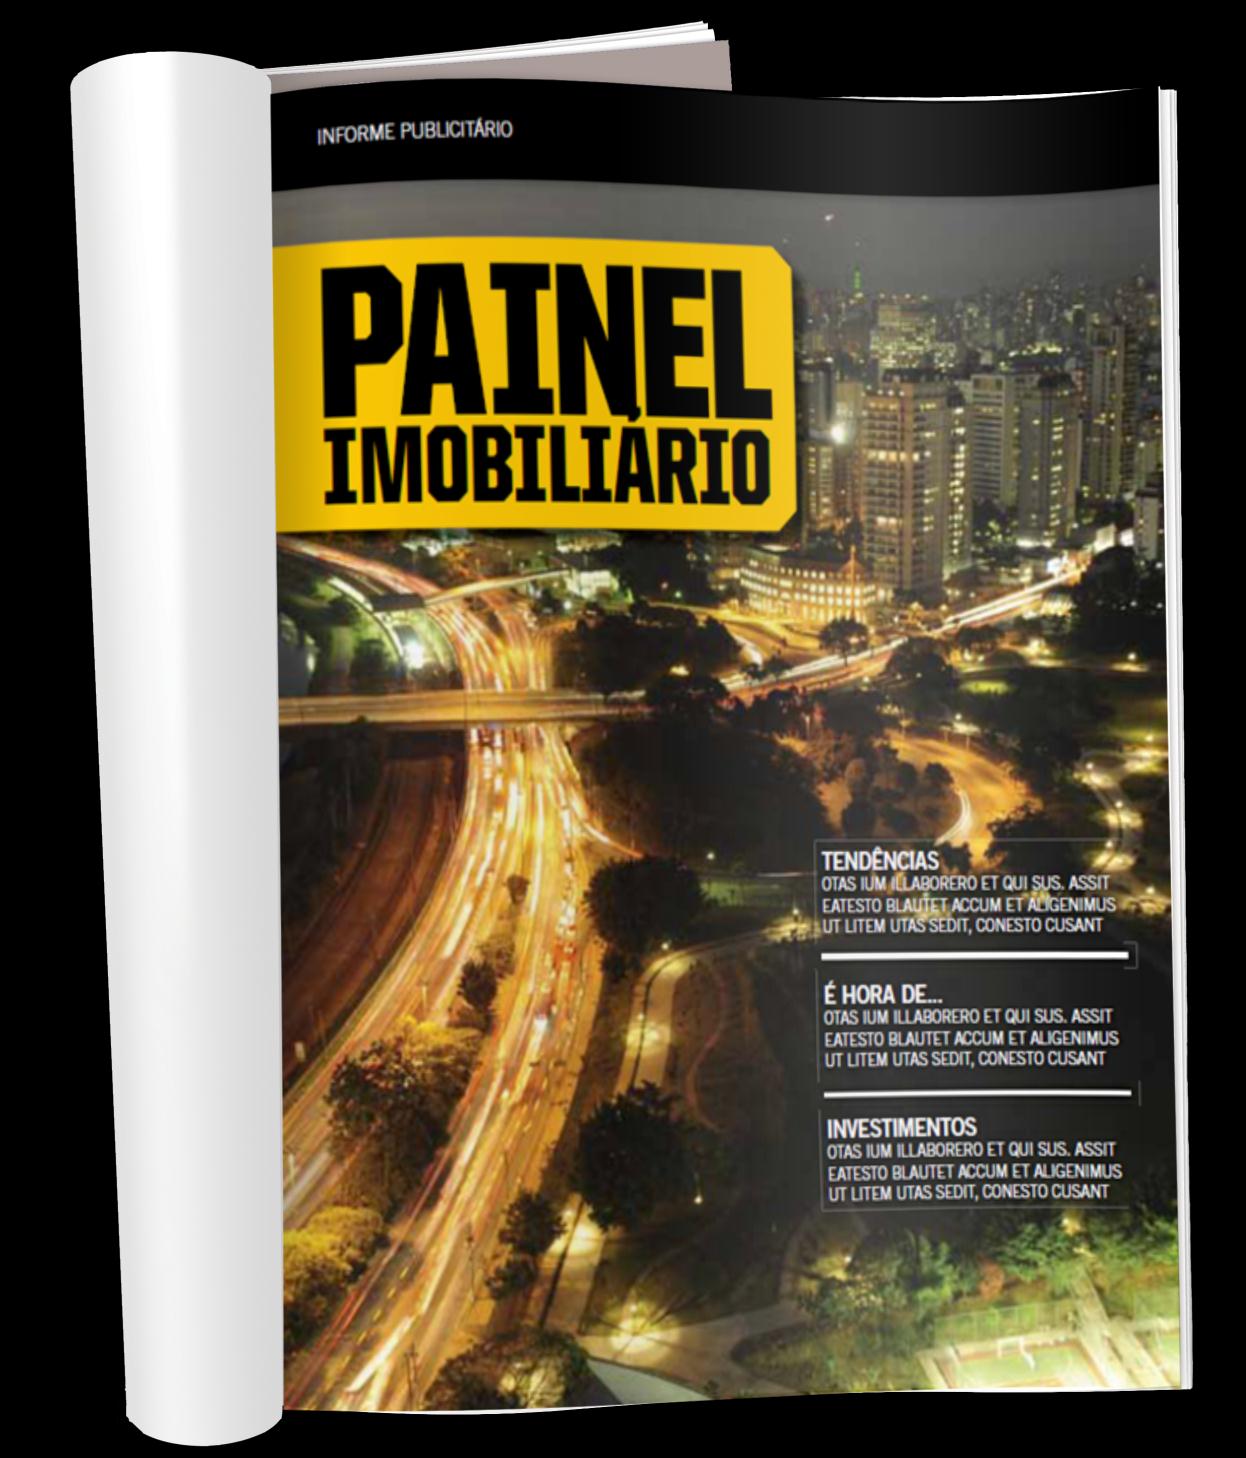 Especiais Publicitários Painel Imobiliário O Painel Imobiliário é uma seção publicitária fixa presente na revista Exame, que tem como principal tema o mercado imobiliário de alto padrão.